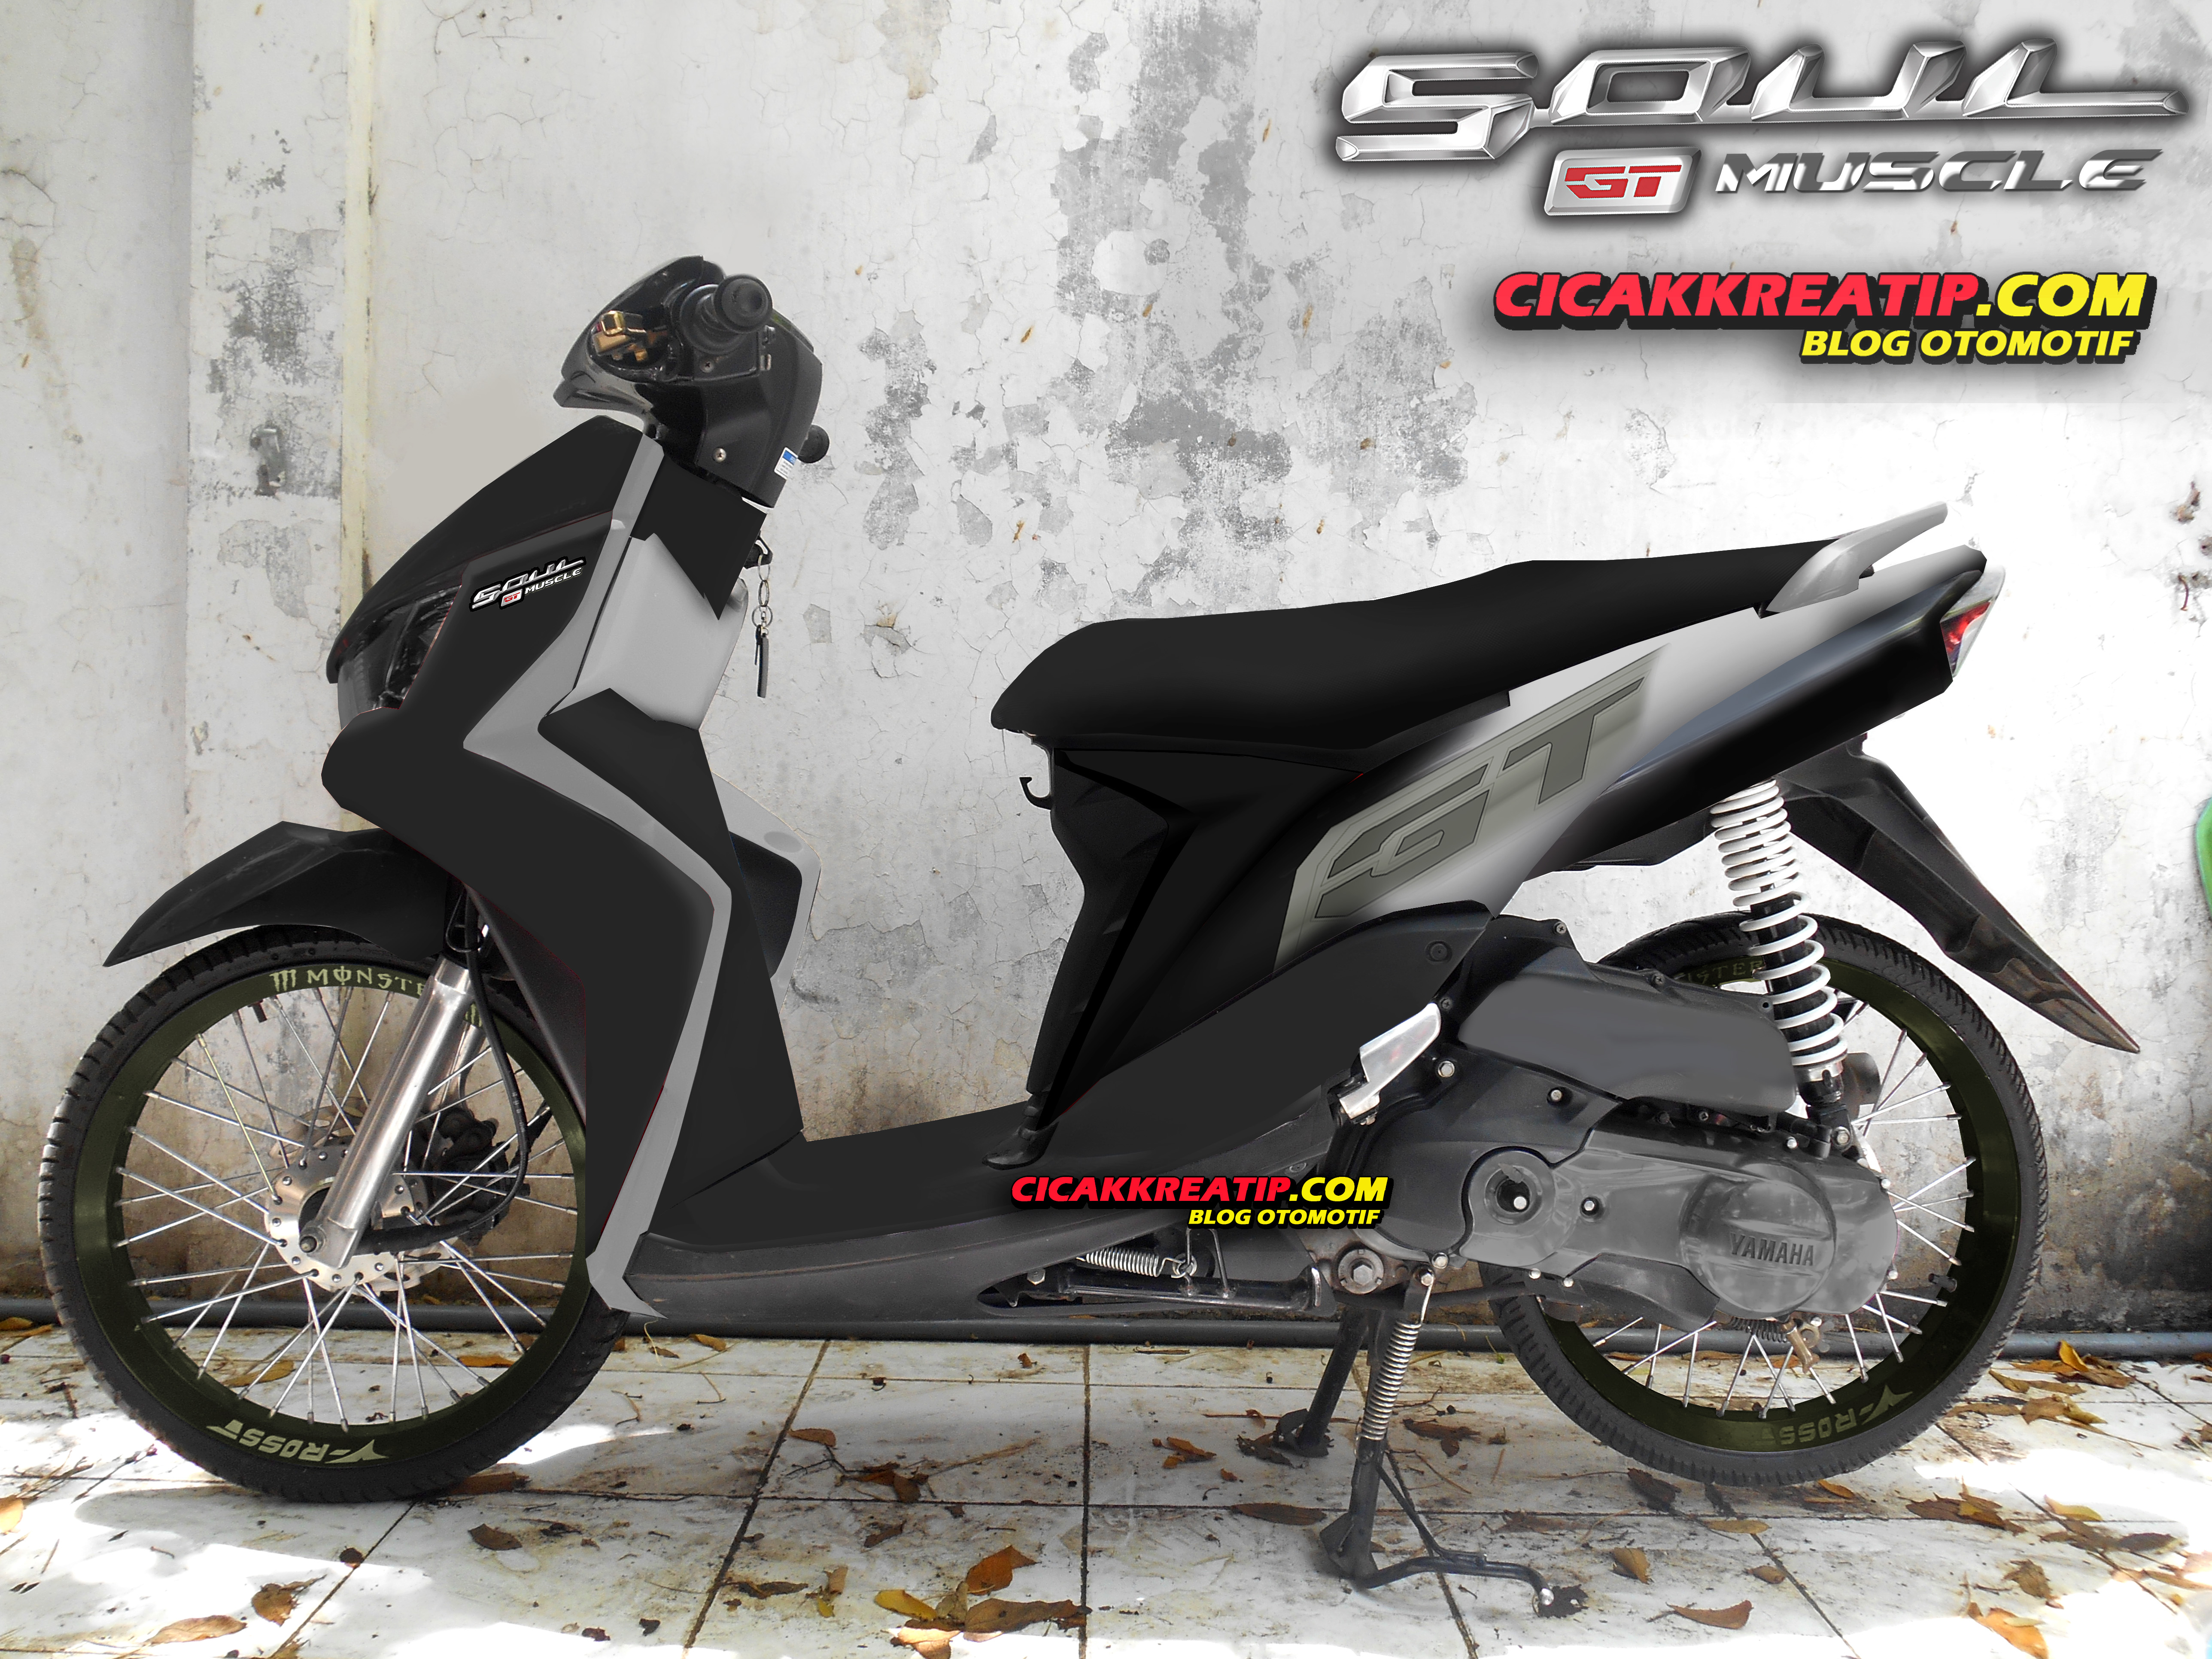 Modifikasi Yamaha Mio Soul Gt Velg 17 Modifikasi Motor Kawasaki